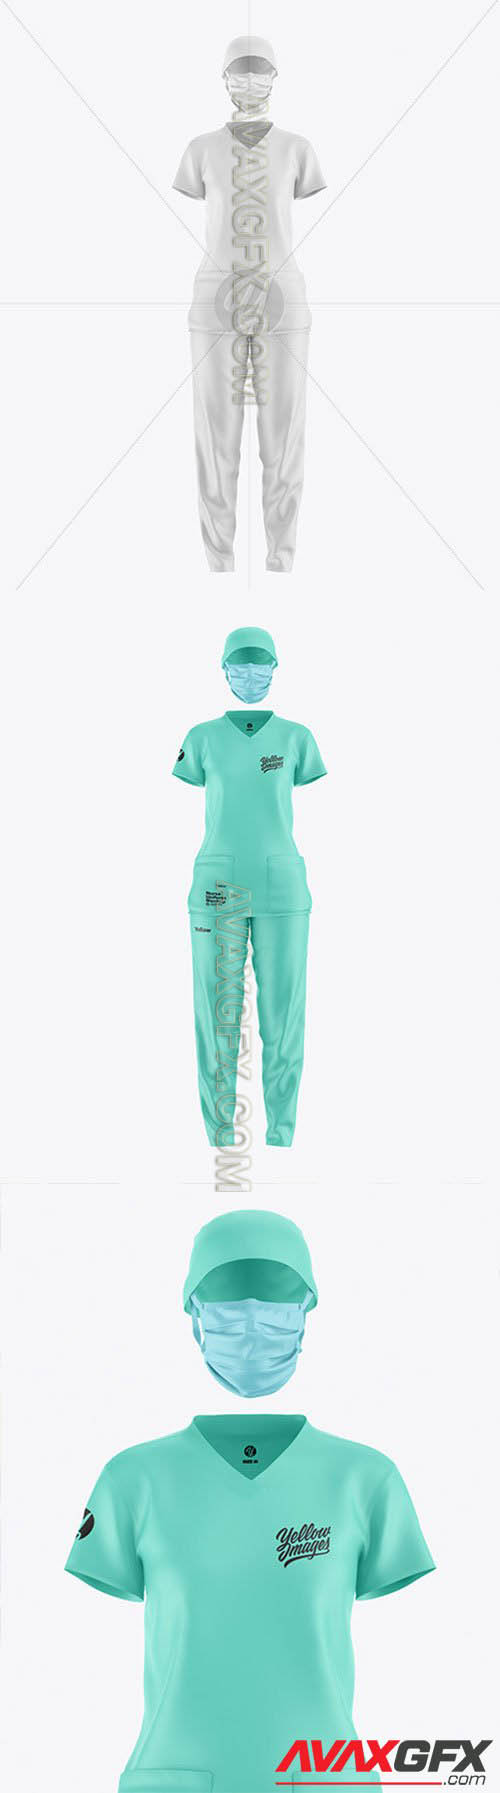 Nurse Uniform Mockup 61289